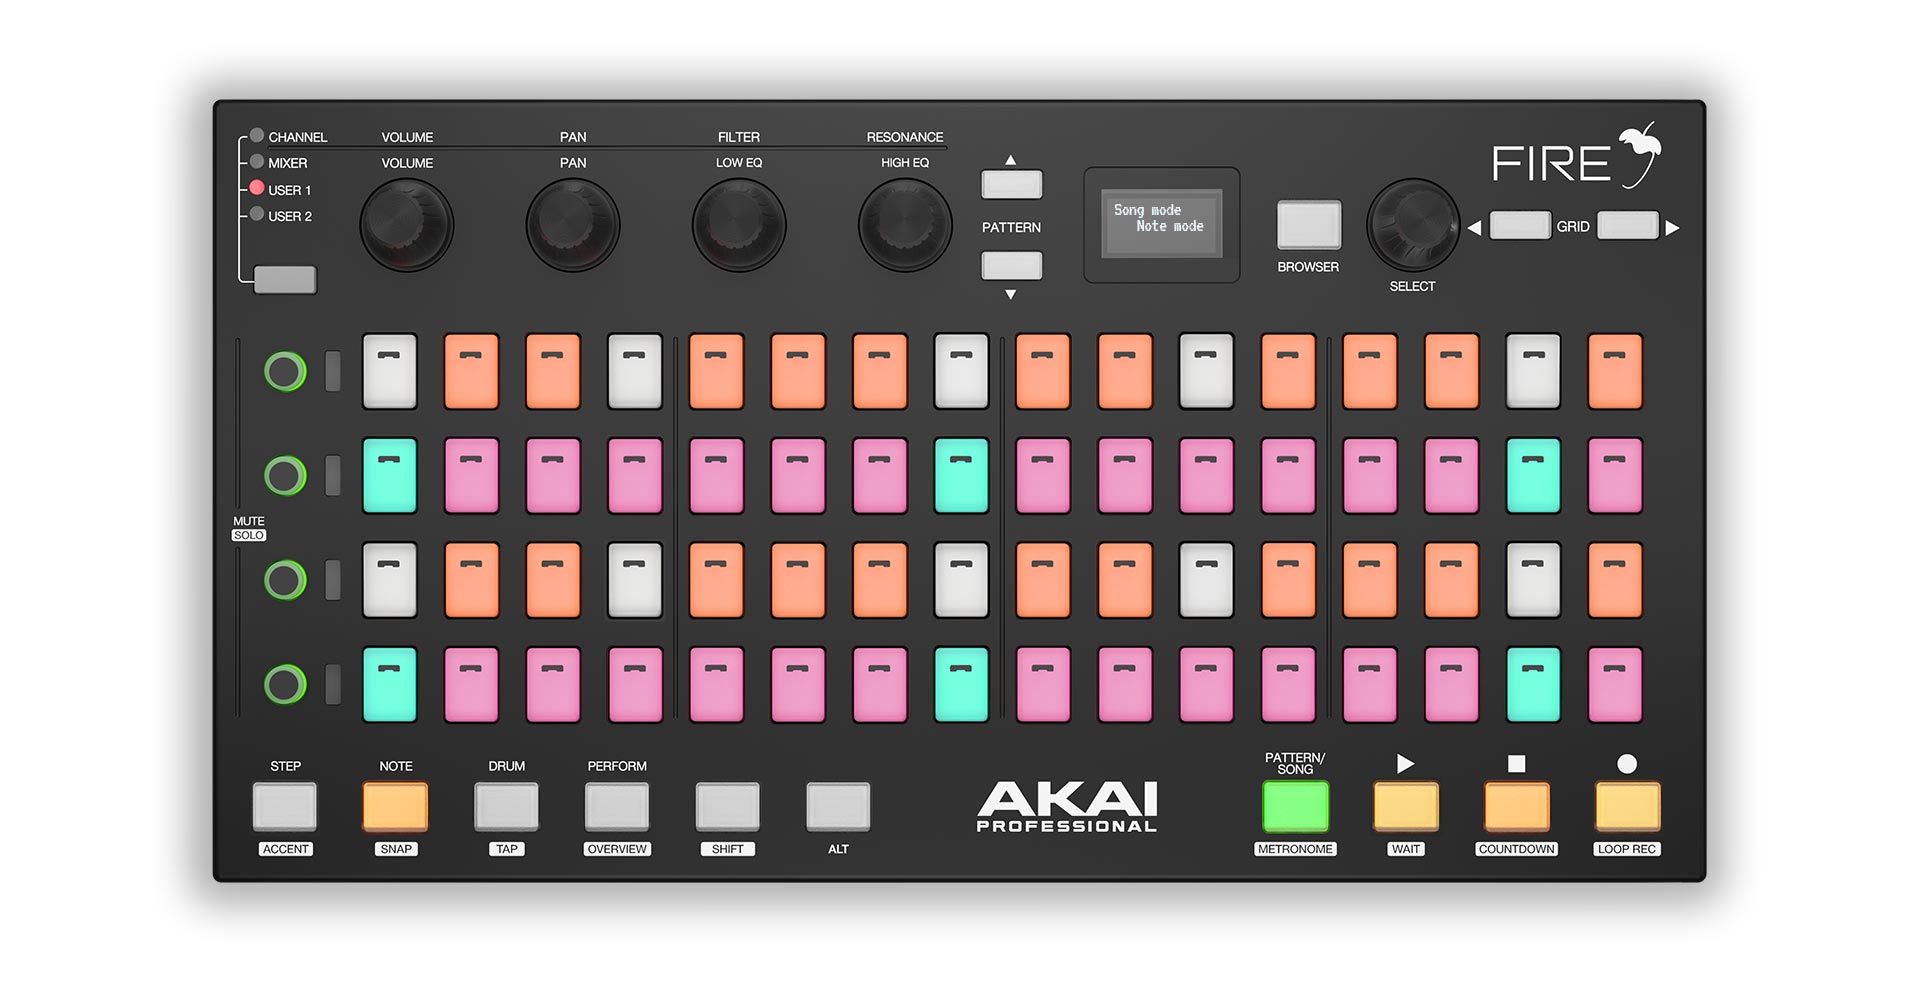 Fire Pad Controller for FL Studio | Akai Pro